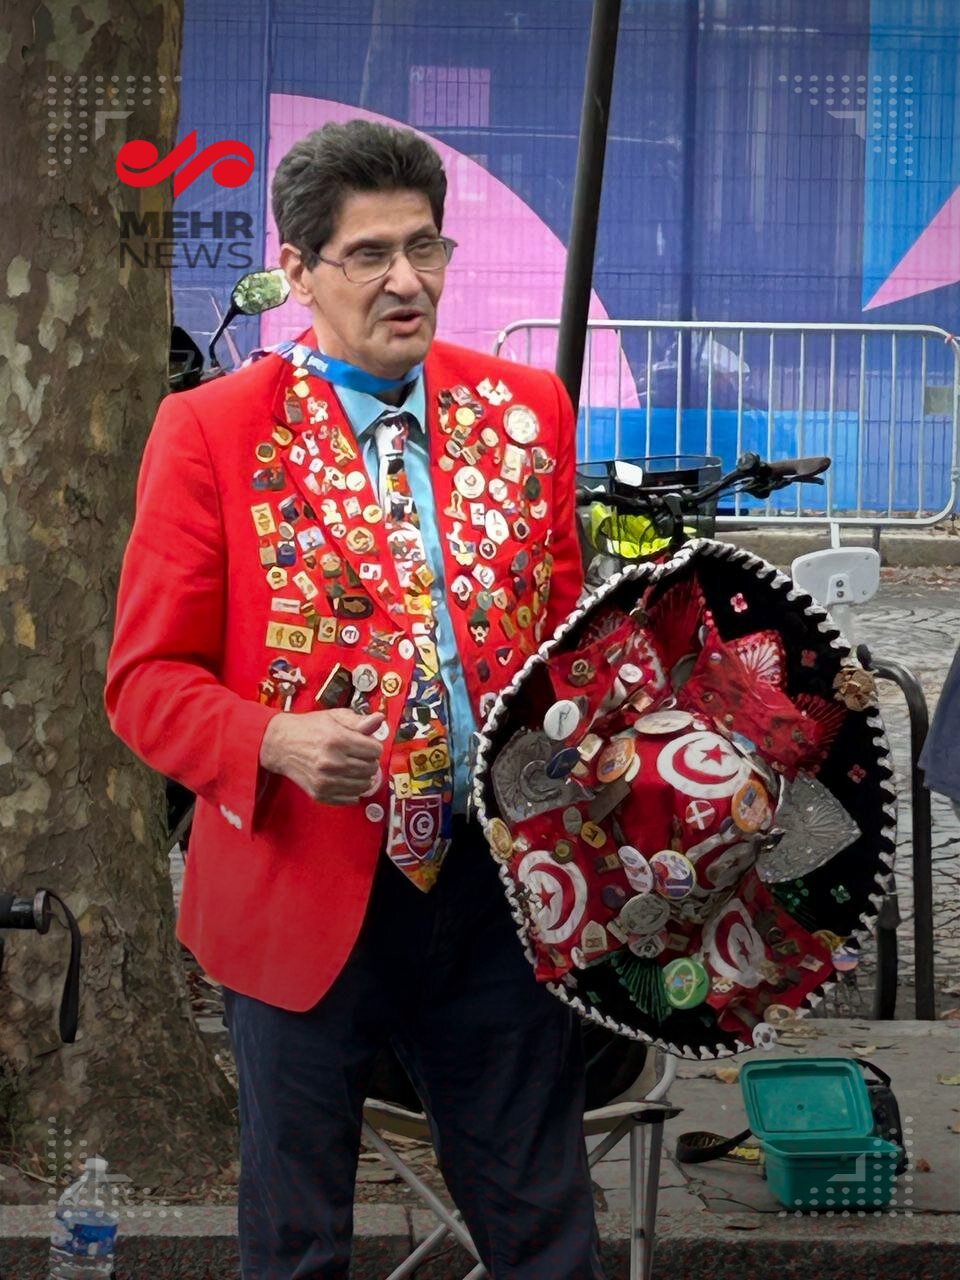 عکس | تیپ و لباس بسیار خاص یک توریست در المپیک پاریس